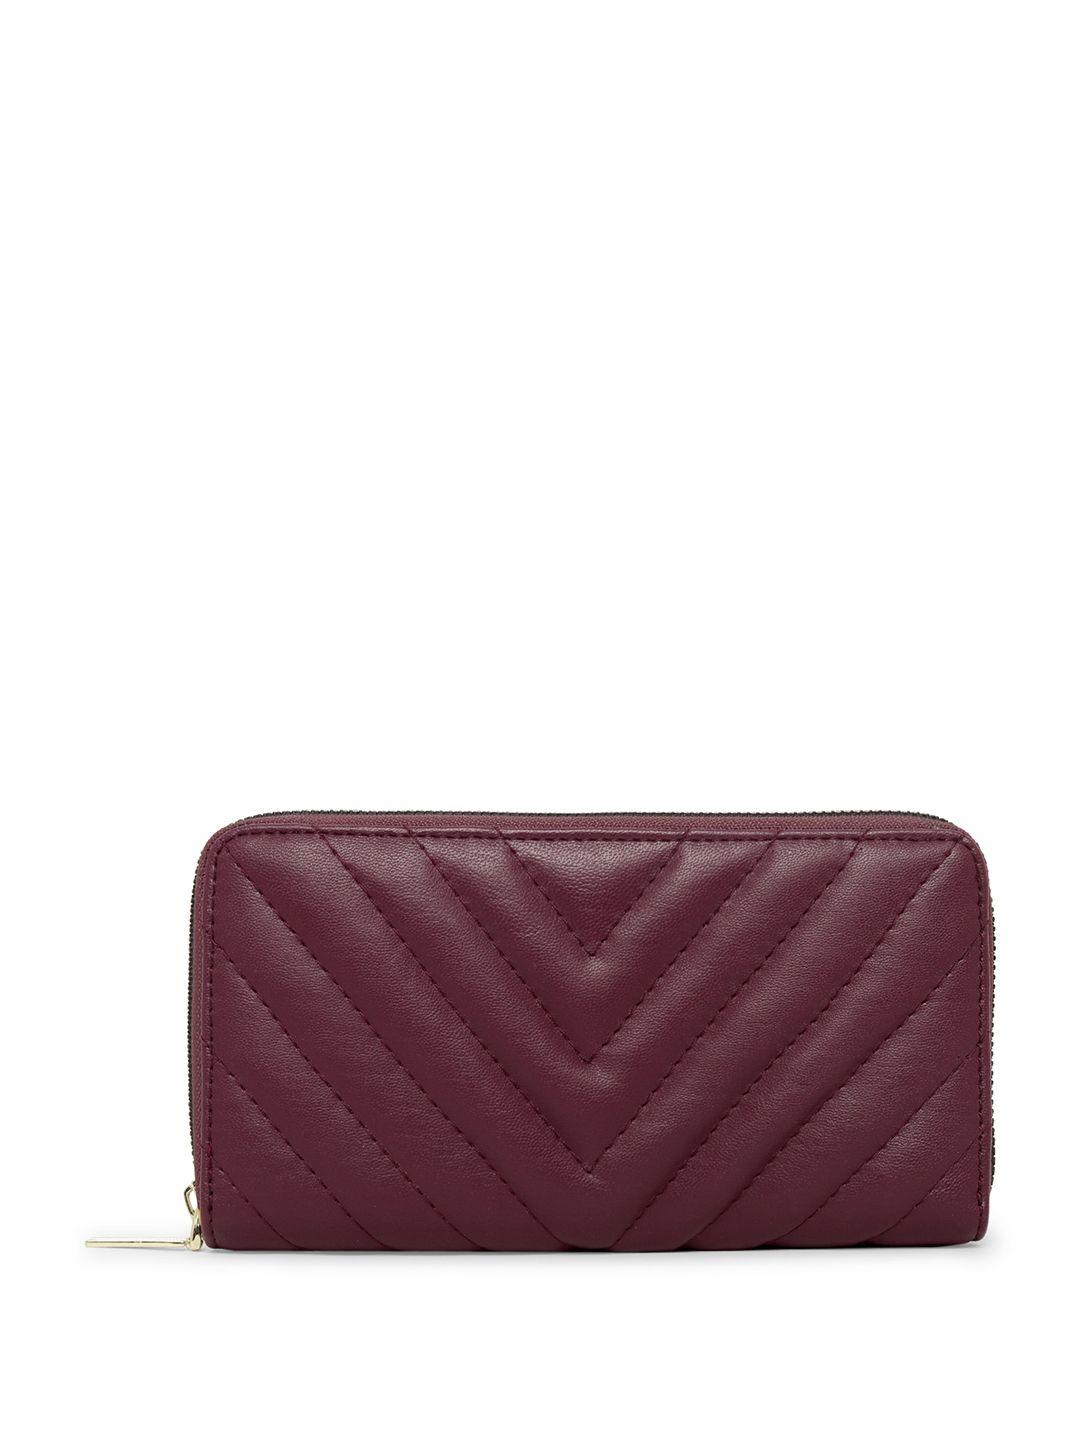 dressberry-women-burgundy-striped-zip-around-wallet